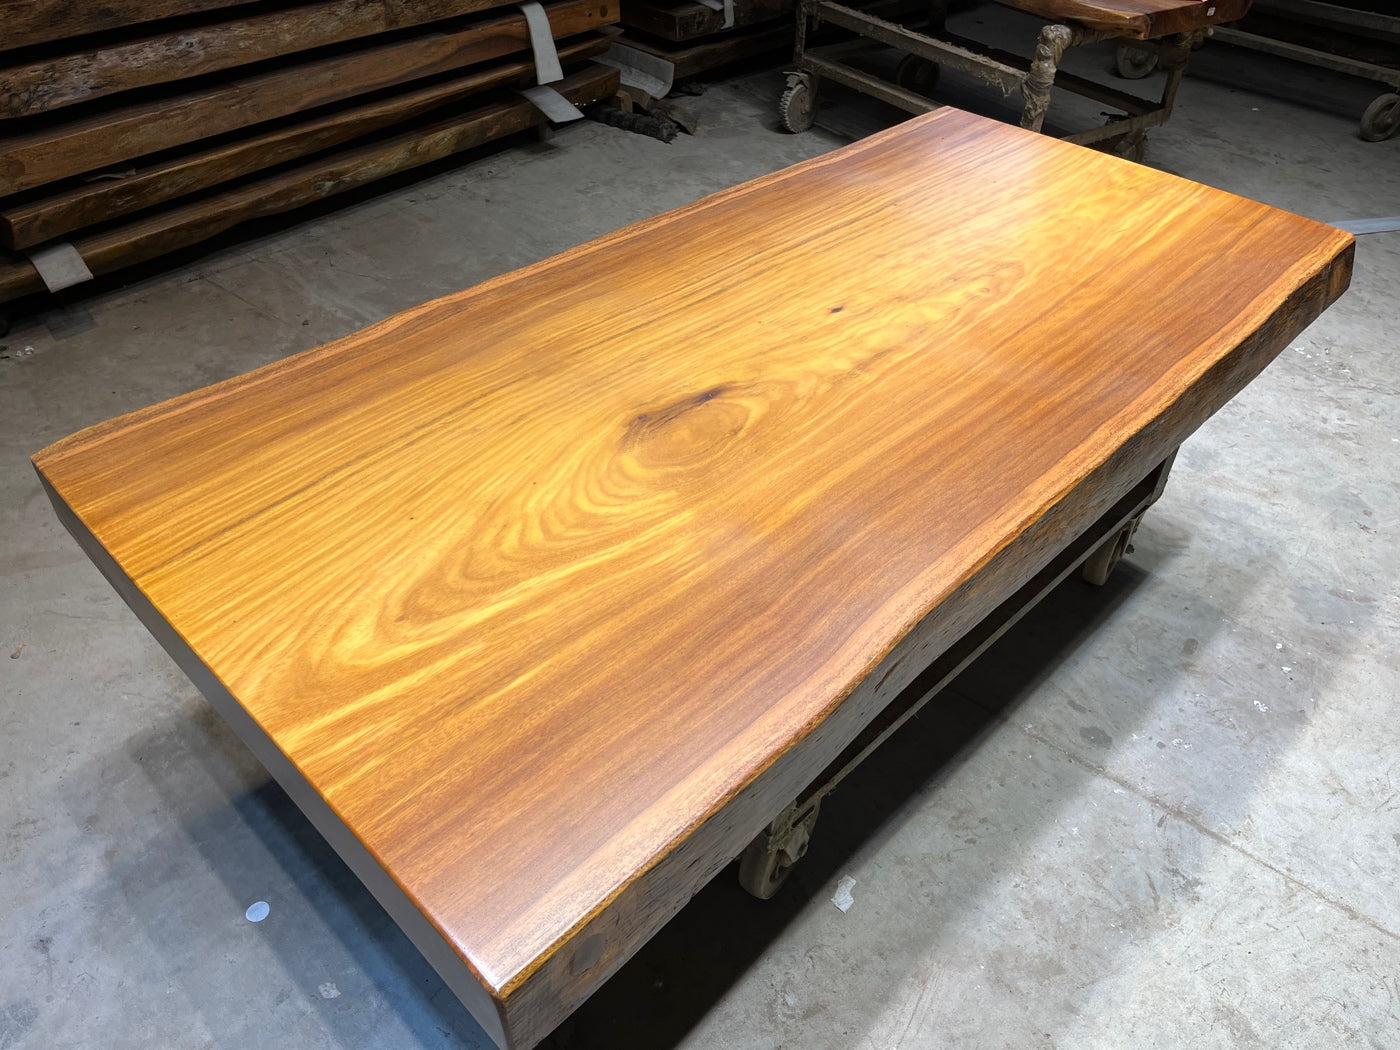 Tali wood slab table legs, Tali wood table top,  Africa wood slab table designs